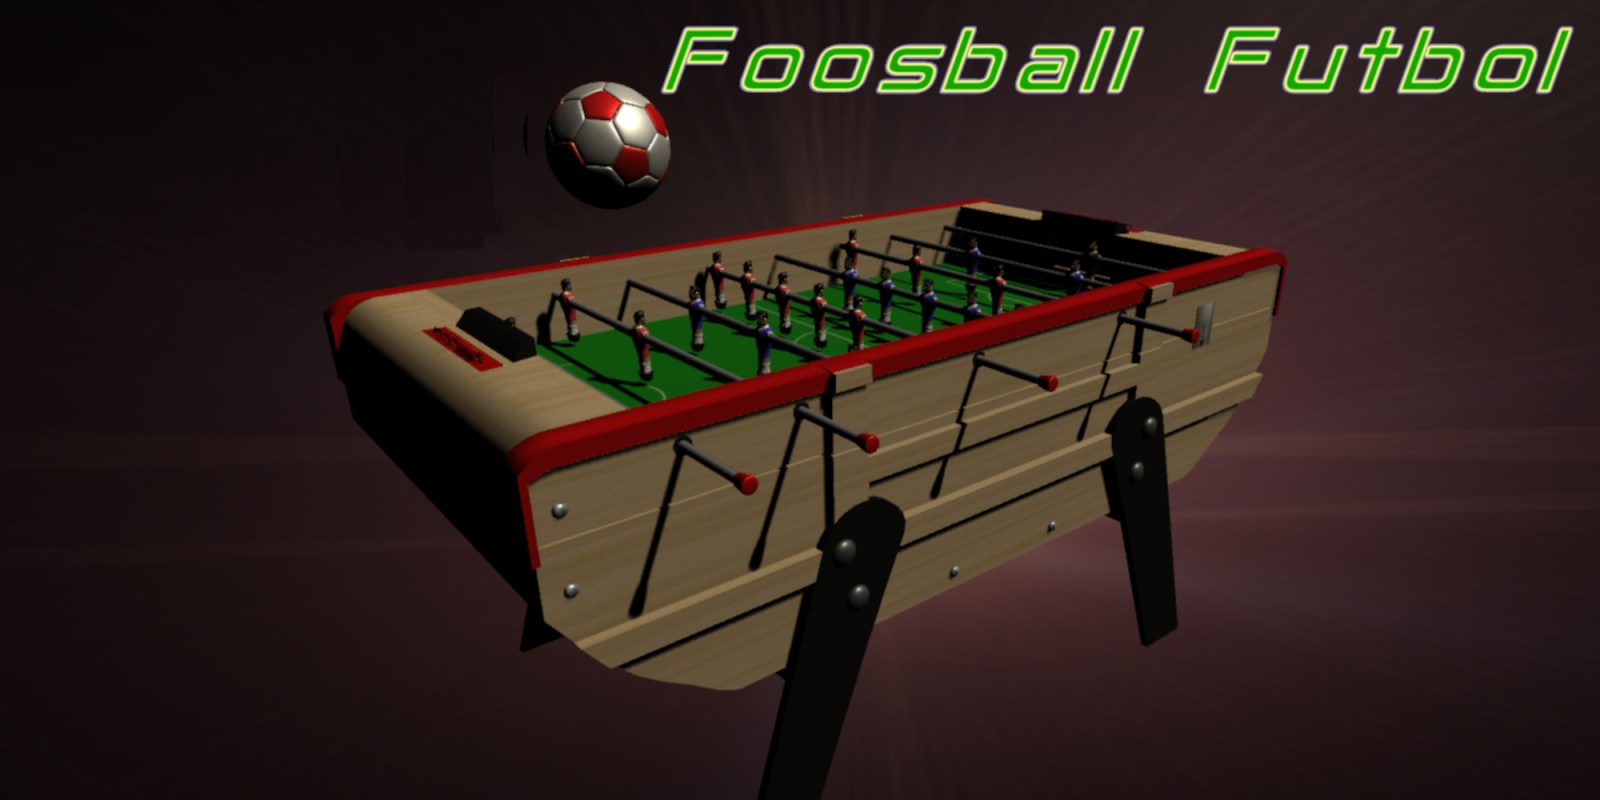 Foosball Futbol